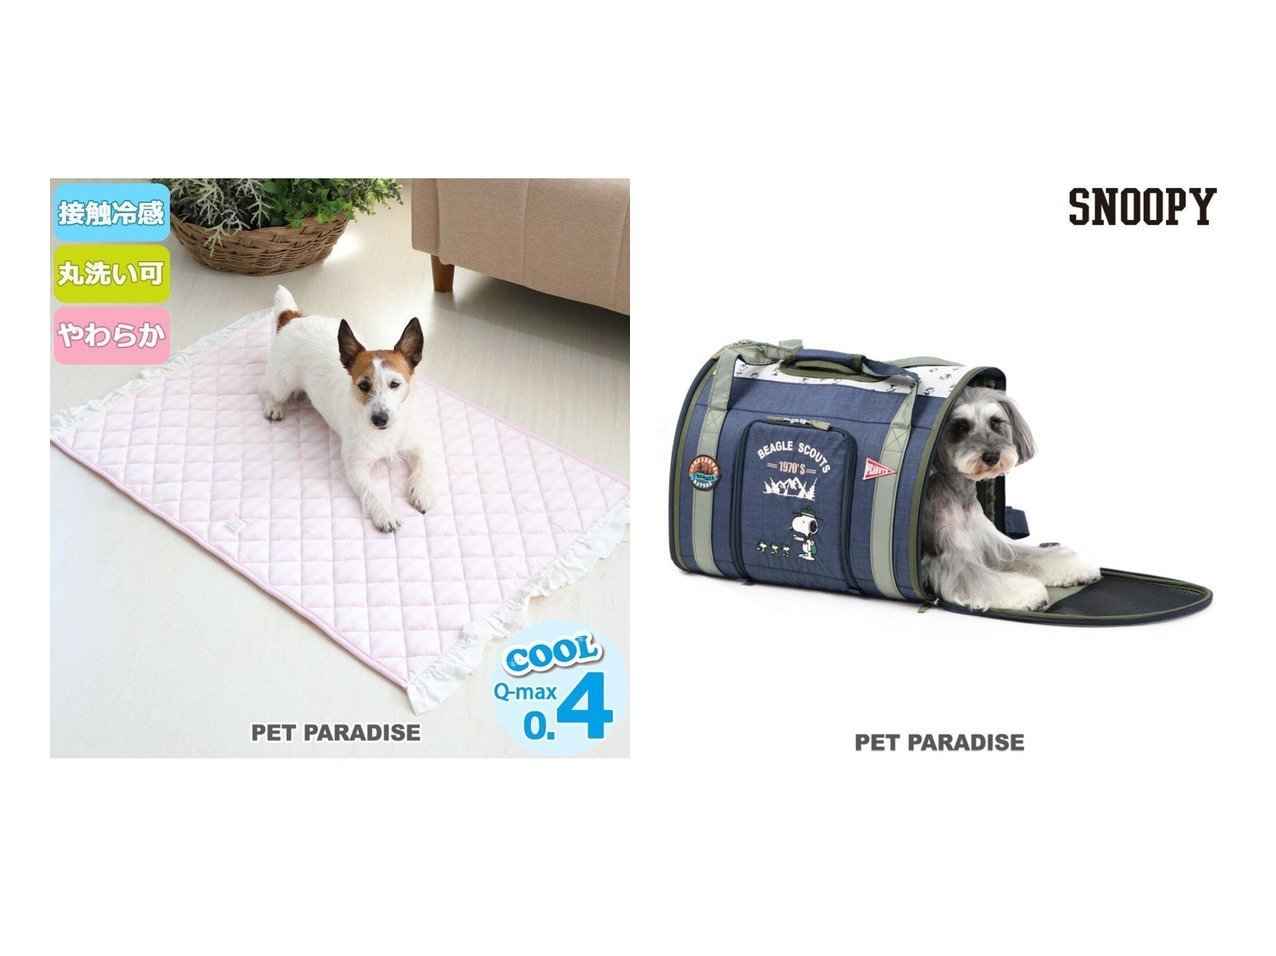 Pet Paradise ペットパラダイス のスヌーピー ペットキャリーバッグm スカウト 折畳リュック 小型犬 ペットパラダイス 接触冷感 柔らか ボーダー クールマット 大 100 60cm おすすめ 人気 ペットグッズの通販 おすすめのファッション通販アイテム 人気